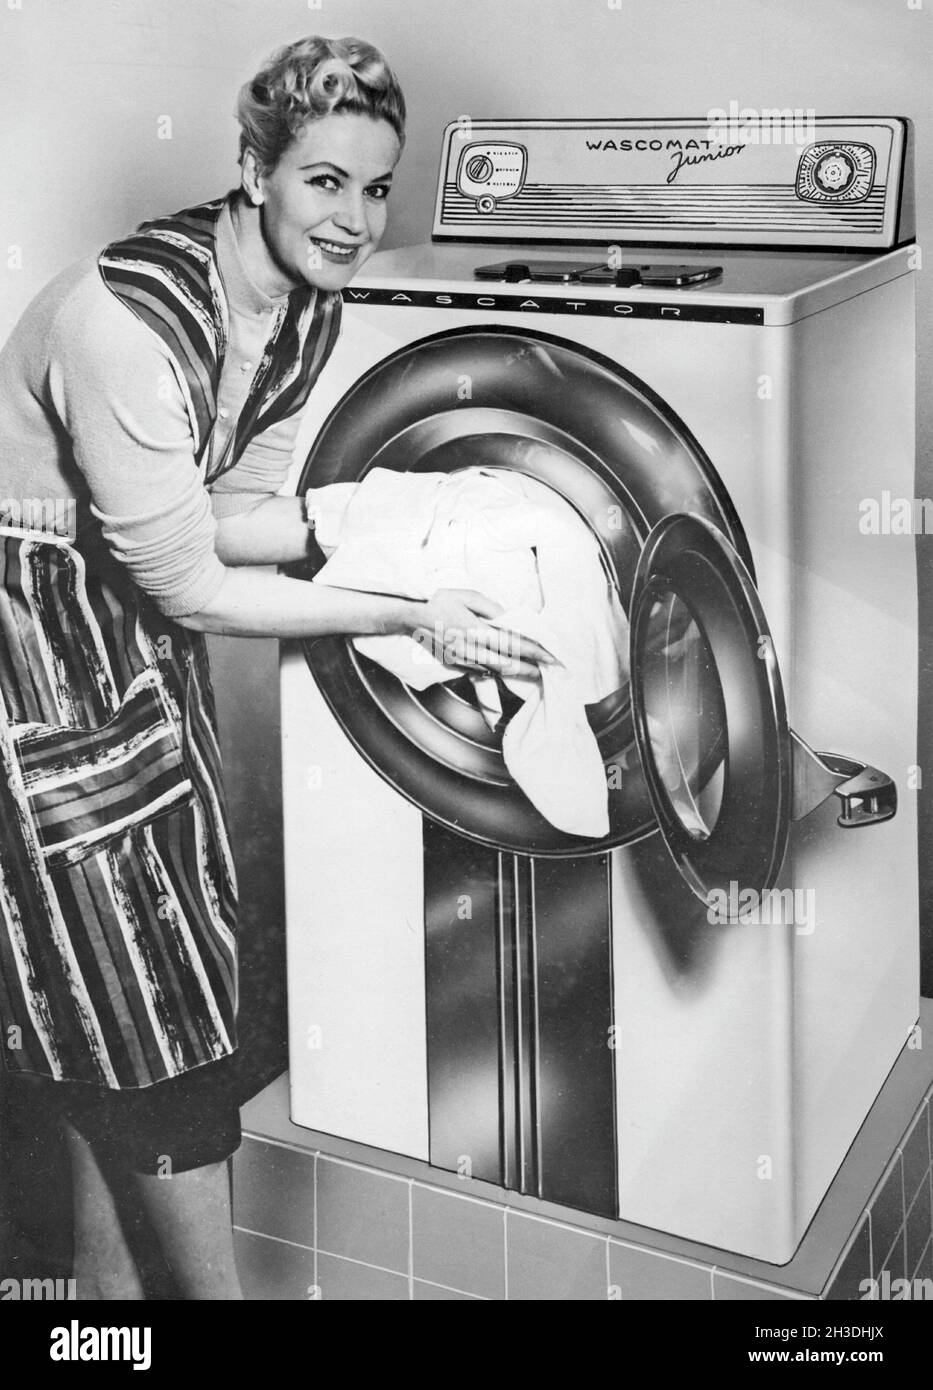 Faire la lessive dans les années 1950.Une dame présente la nouvelle machine à laver Wasc-O-Mat Junior fabriquée par AB Wascator. Banque D'Images